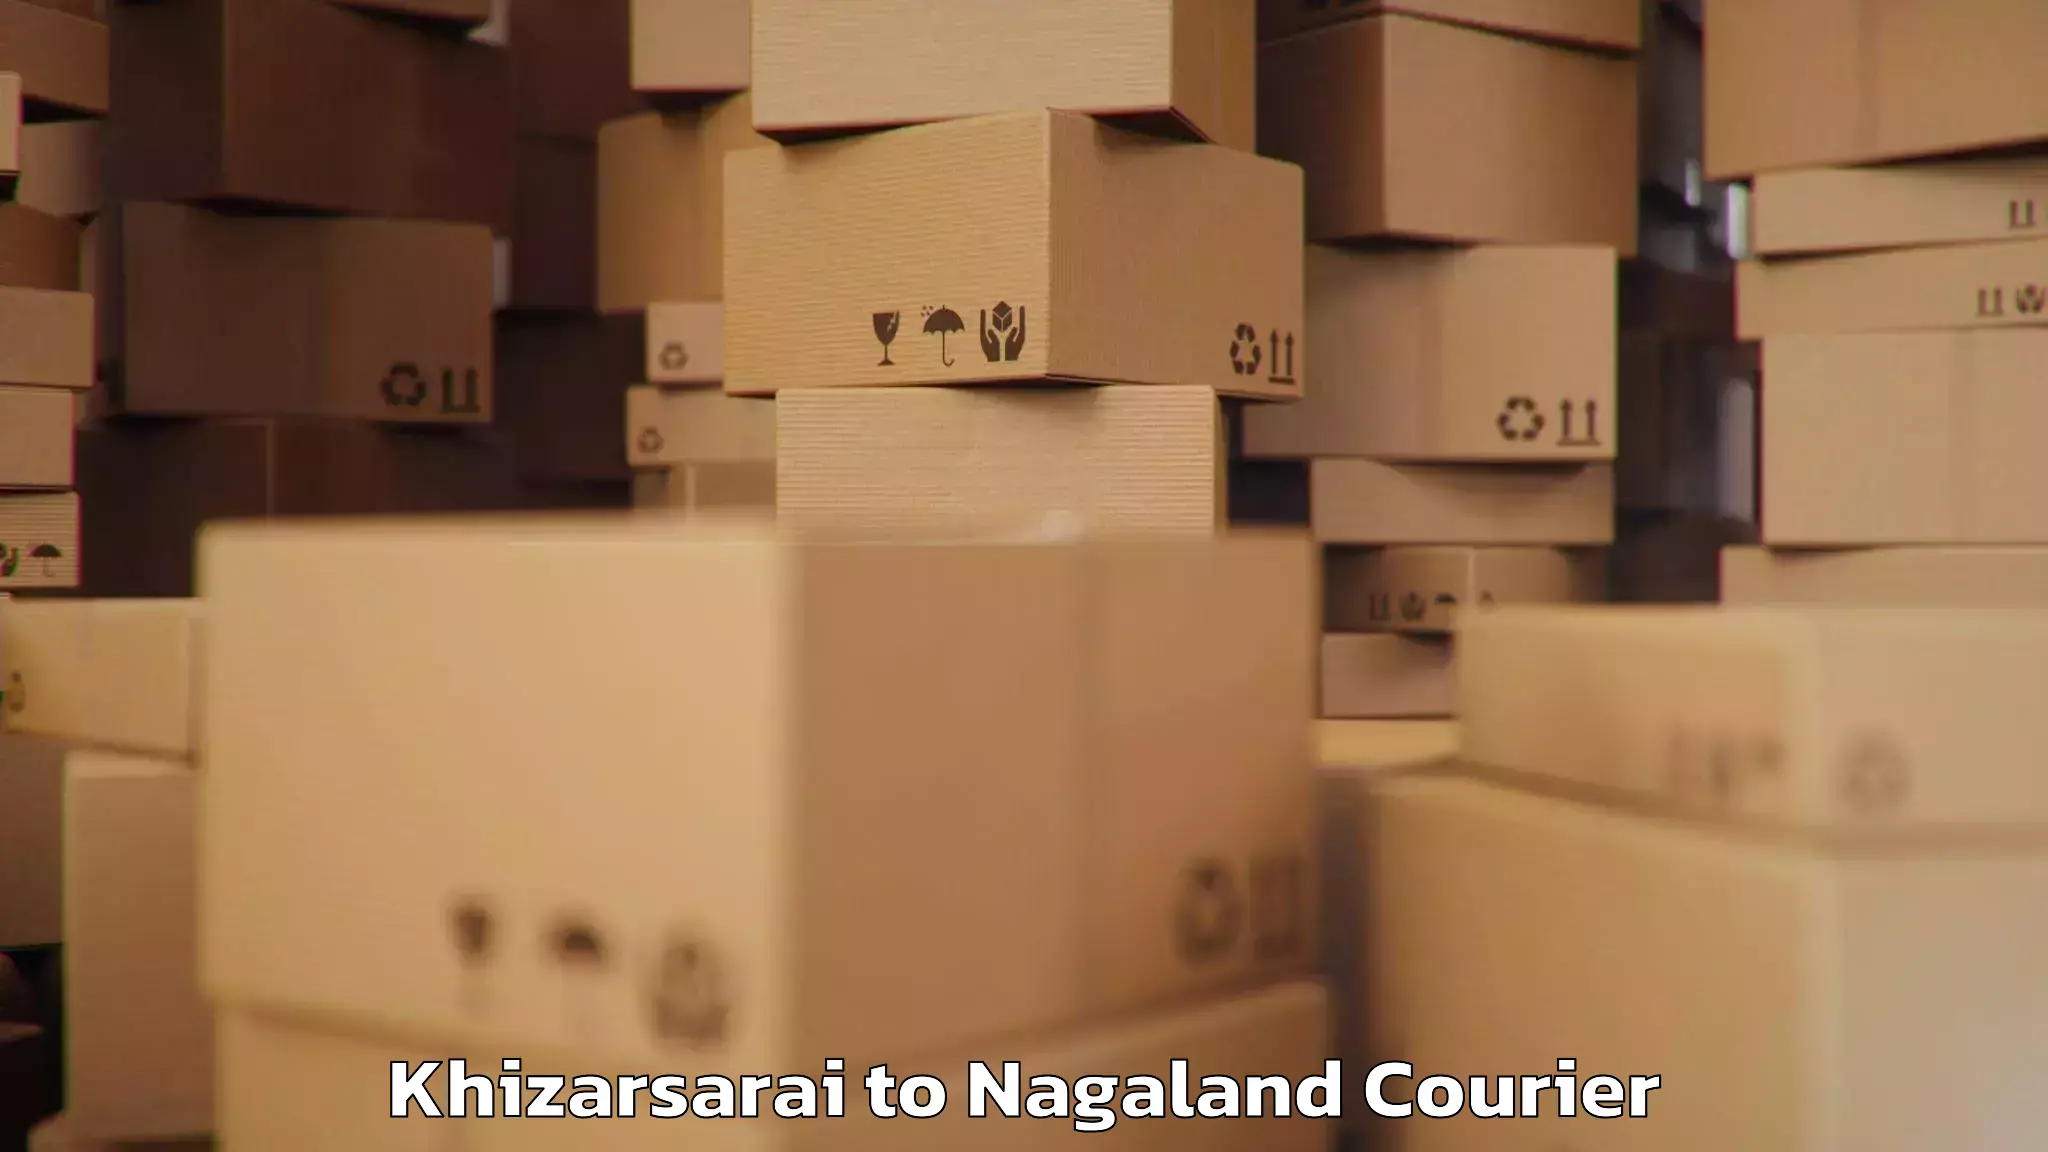 Luggage shipping rates calculator Khizarsarai to Nagaland